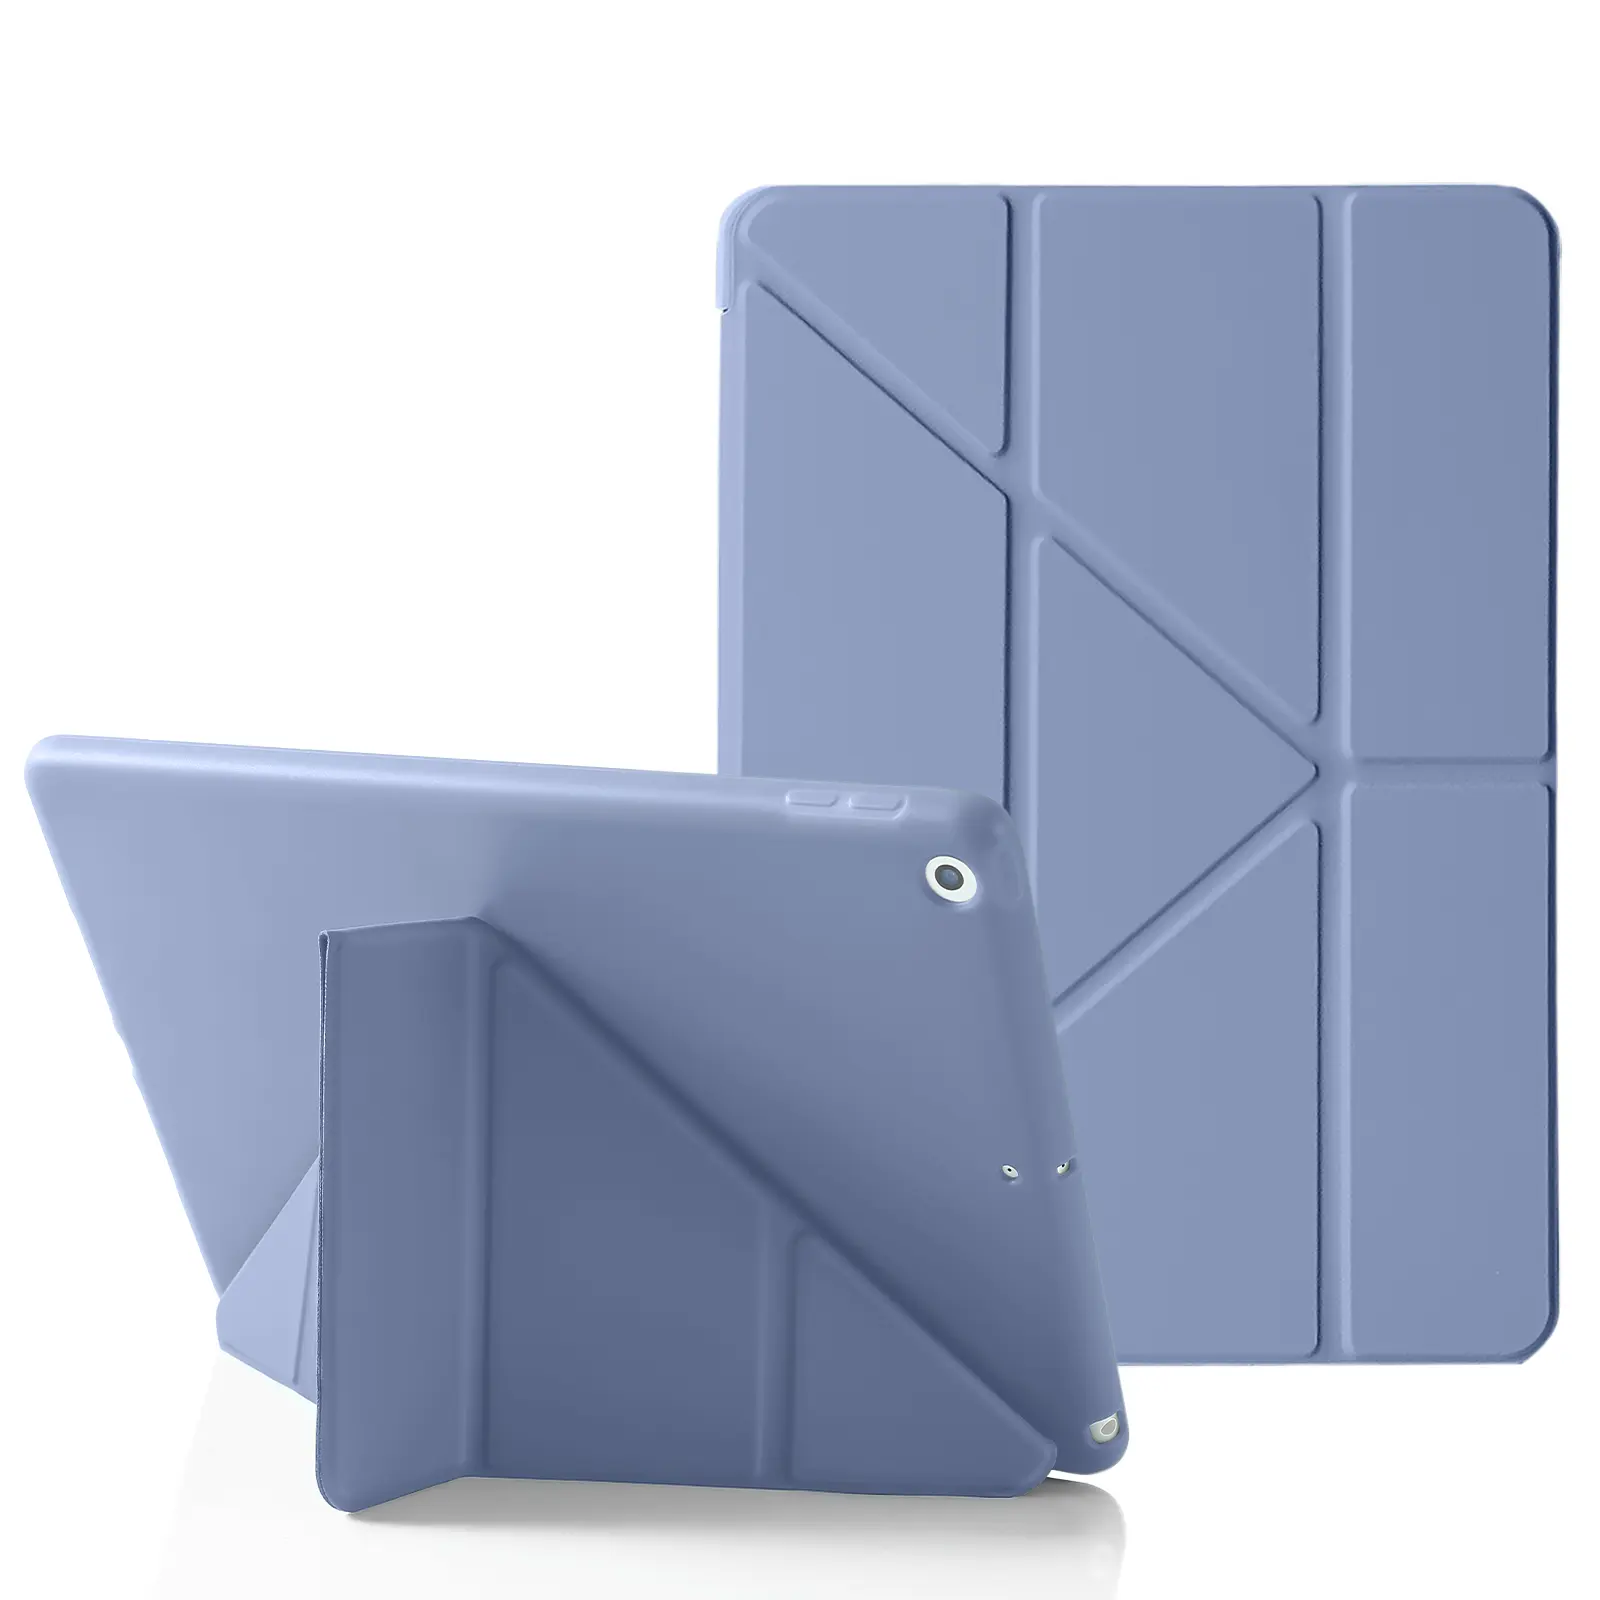 Capa de silicone para tablet TPU de couro PU macio Origami para iPad 10.2 Polegadas 9a 8a 7a Geração